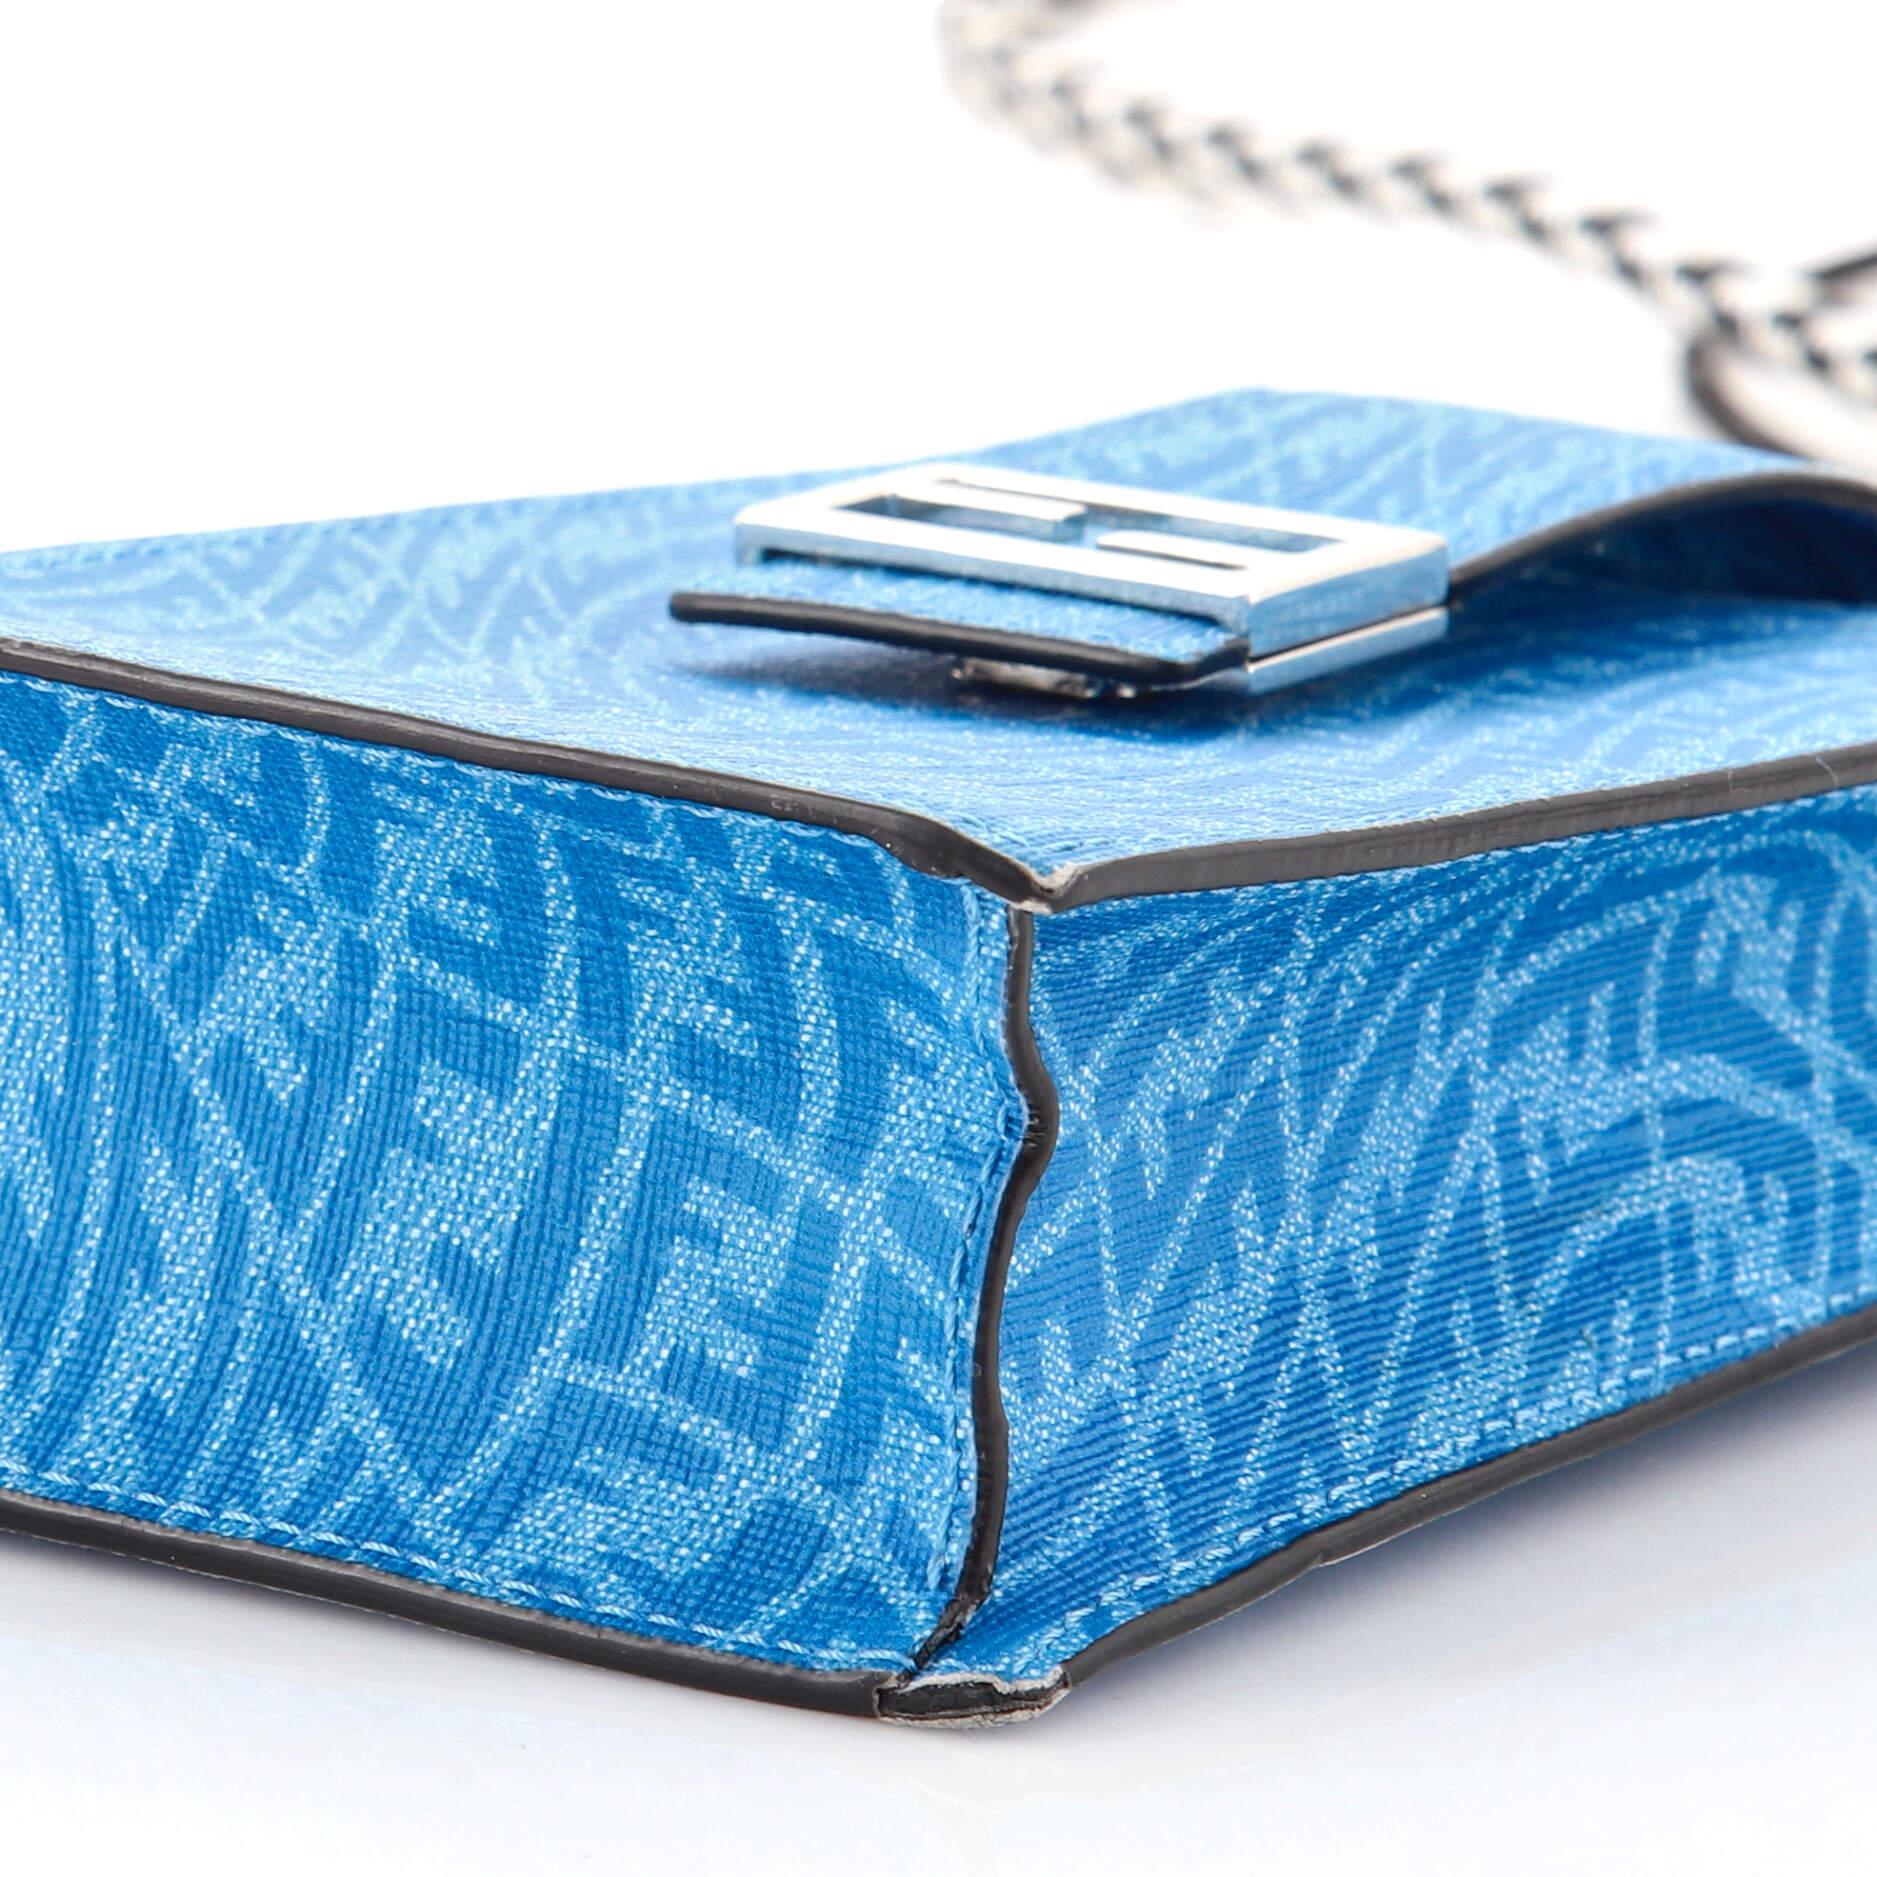 Blue Fendi Phone Holder Bag Vertigo Zucca Leather